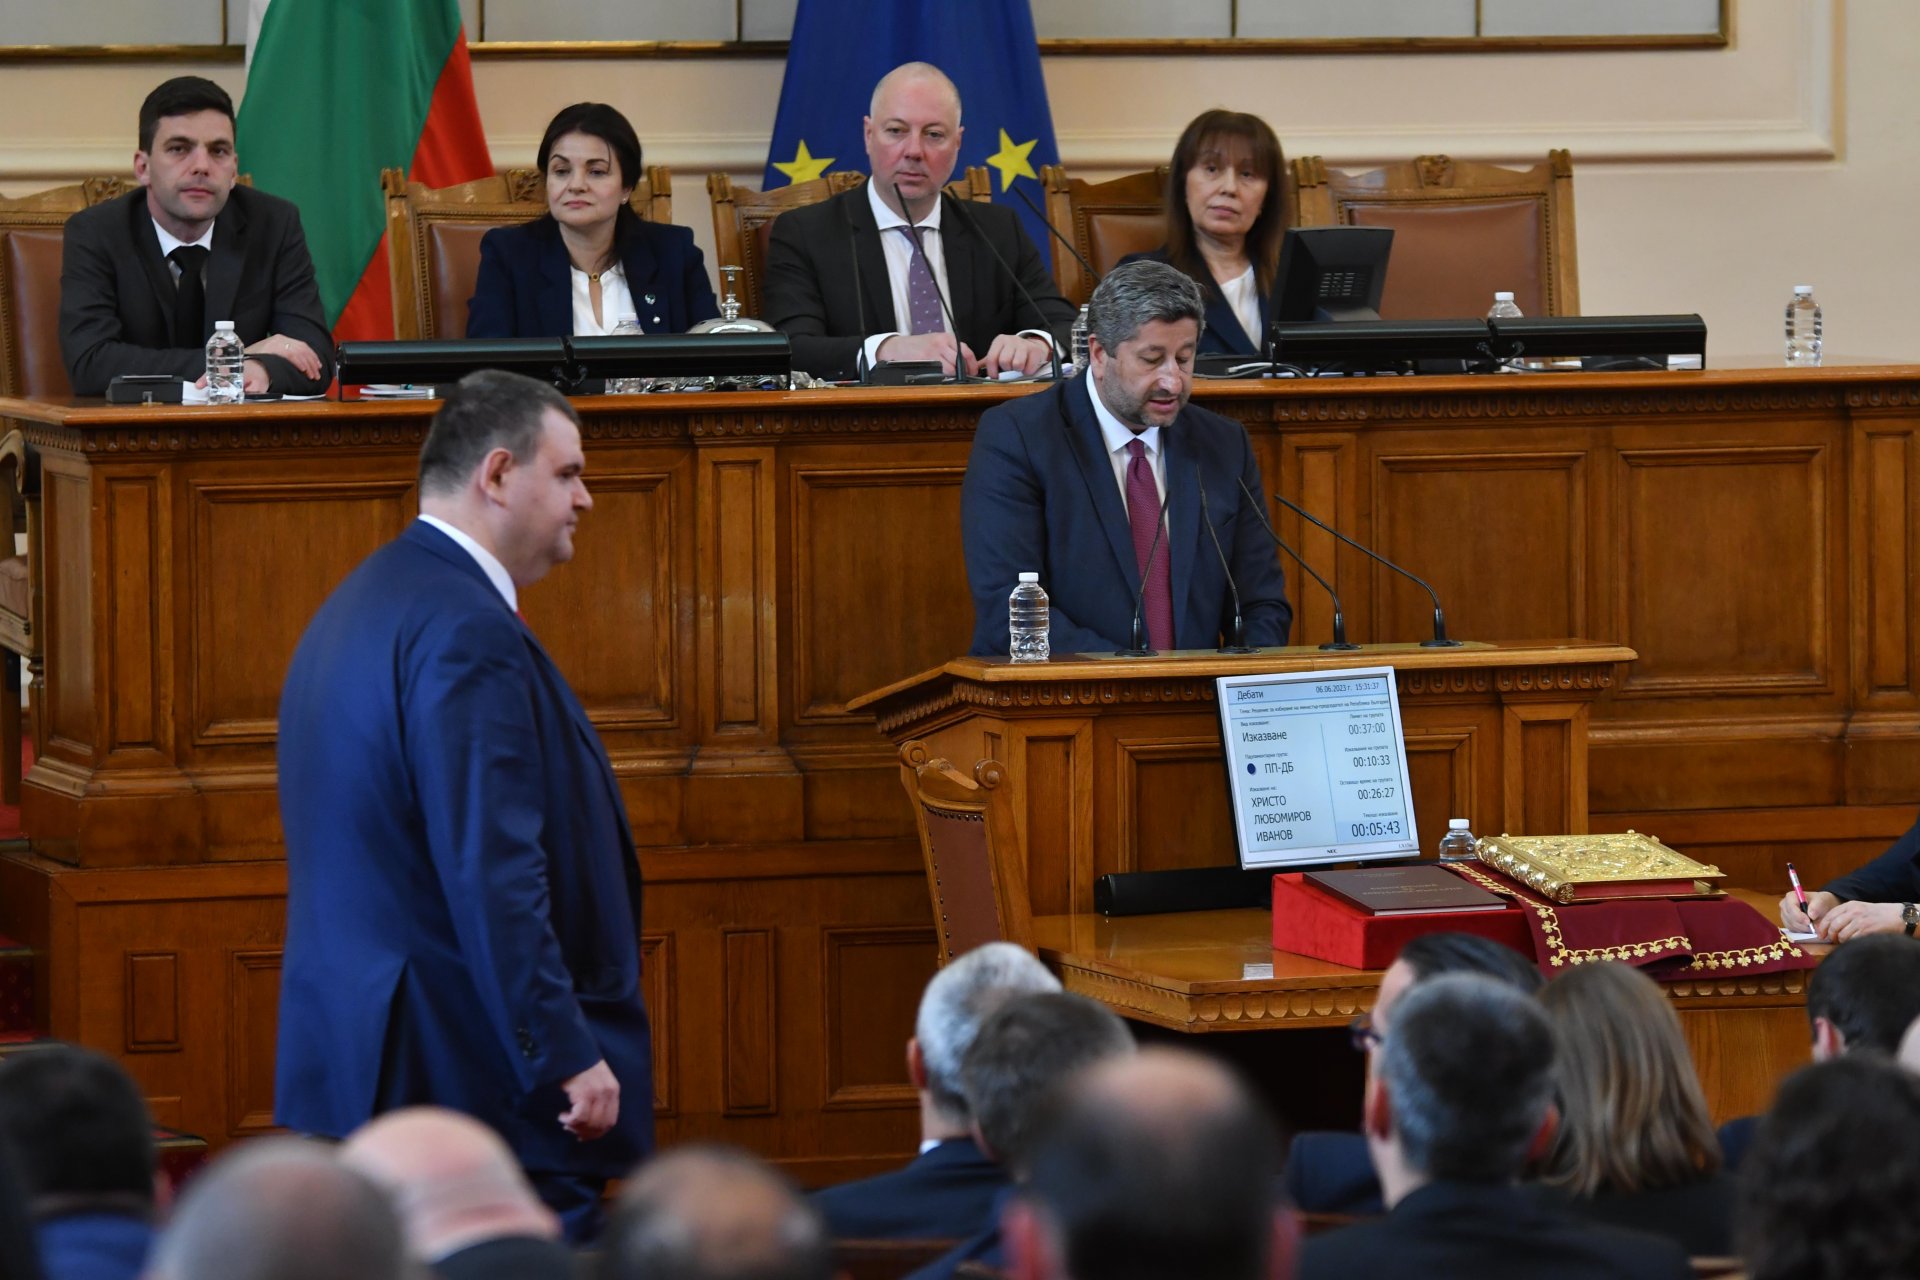 Пеевски минава покрай трибуната, докато Христо Иванов защитава компромиса, направен в името на това правителство